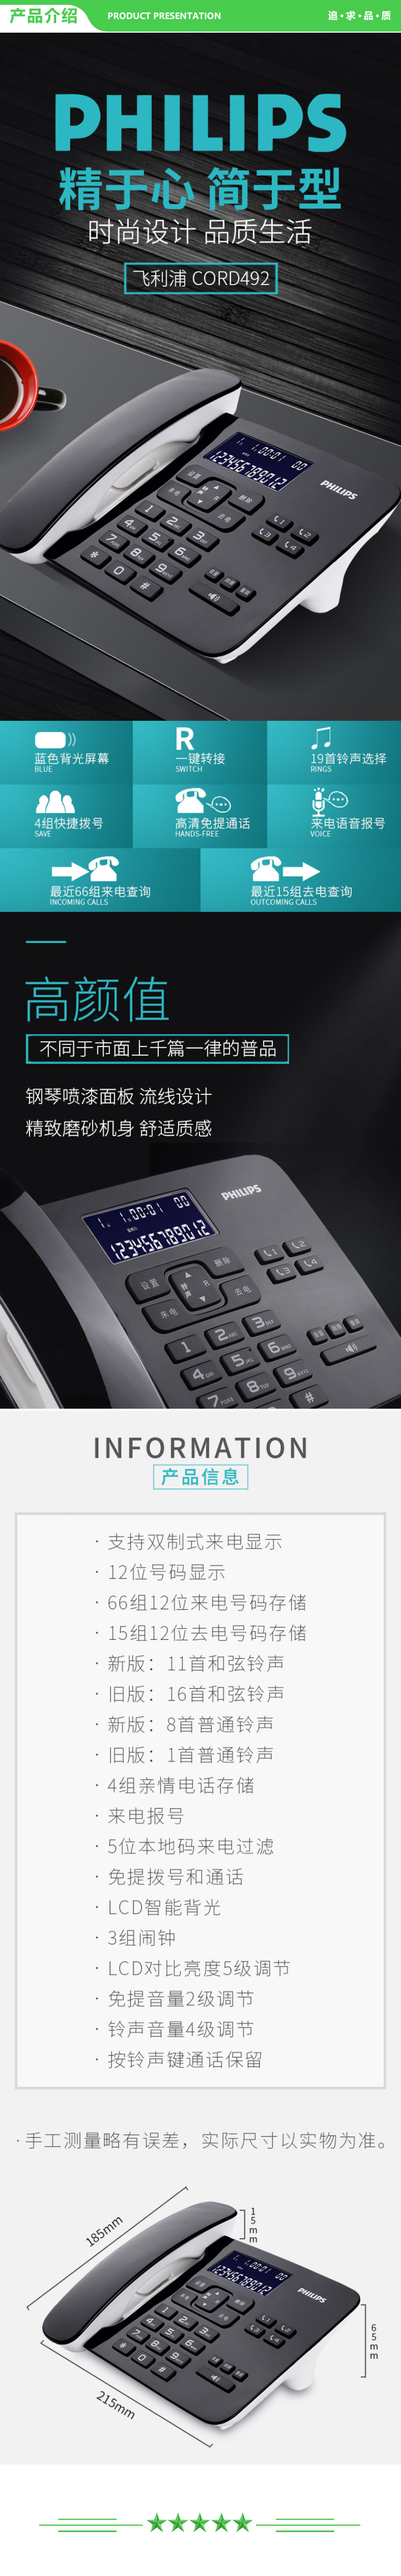 飞利浦 PHILIPS CORD492 电话机座机 固定电话 来电报号 双插孔 一键拨号 (黑色) .jpg